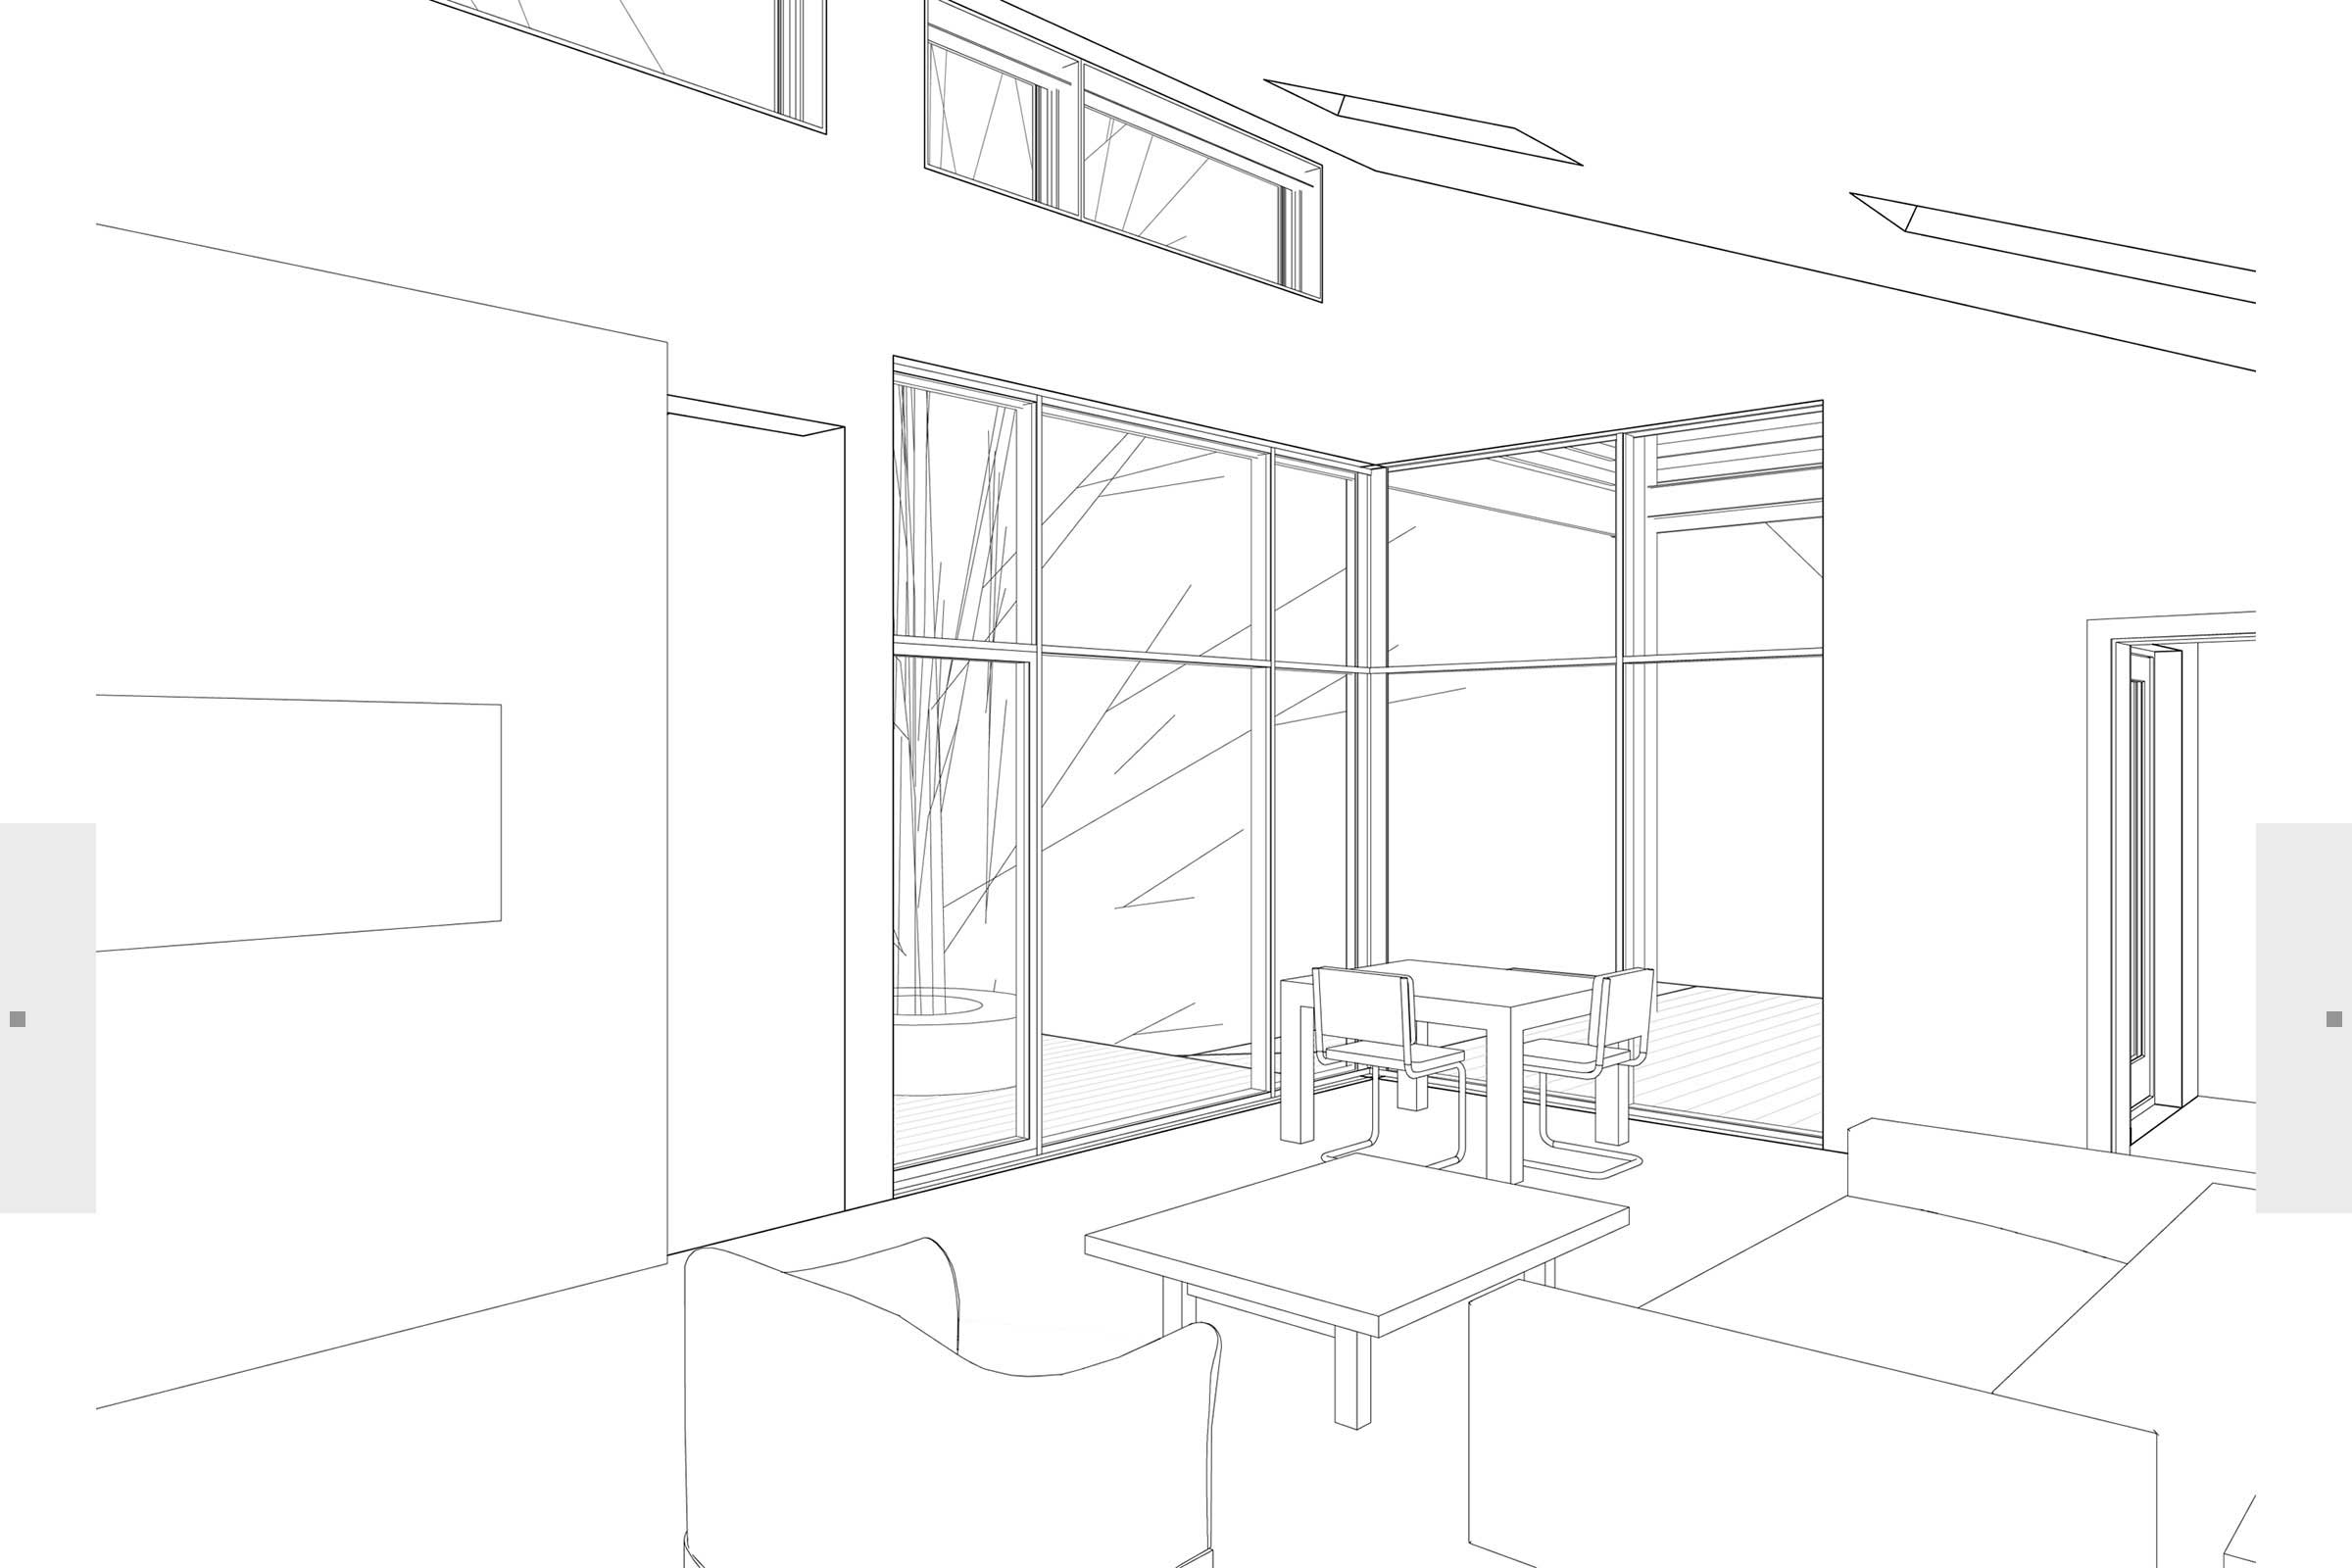 sketch of interior of building